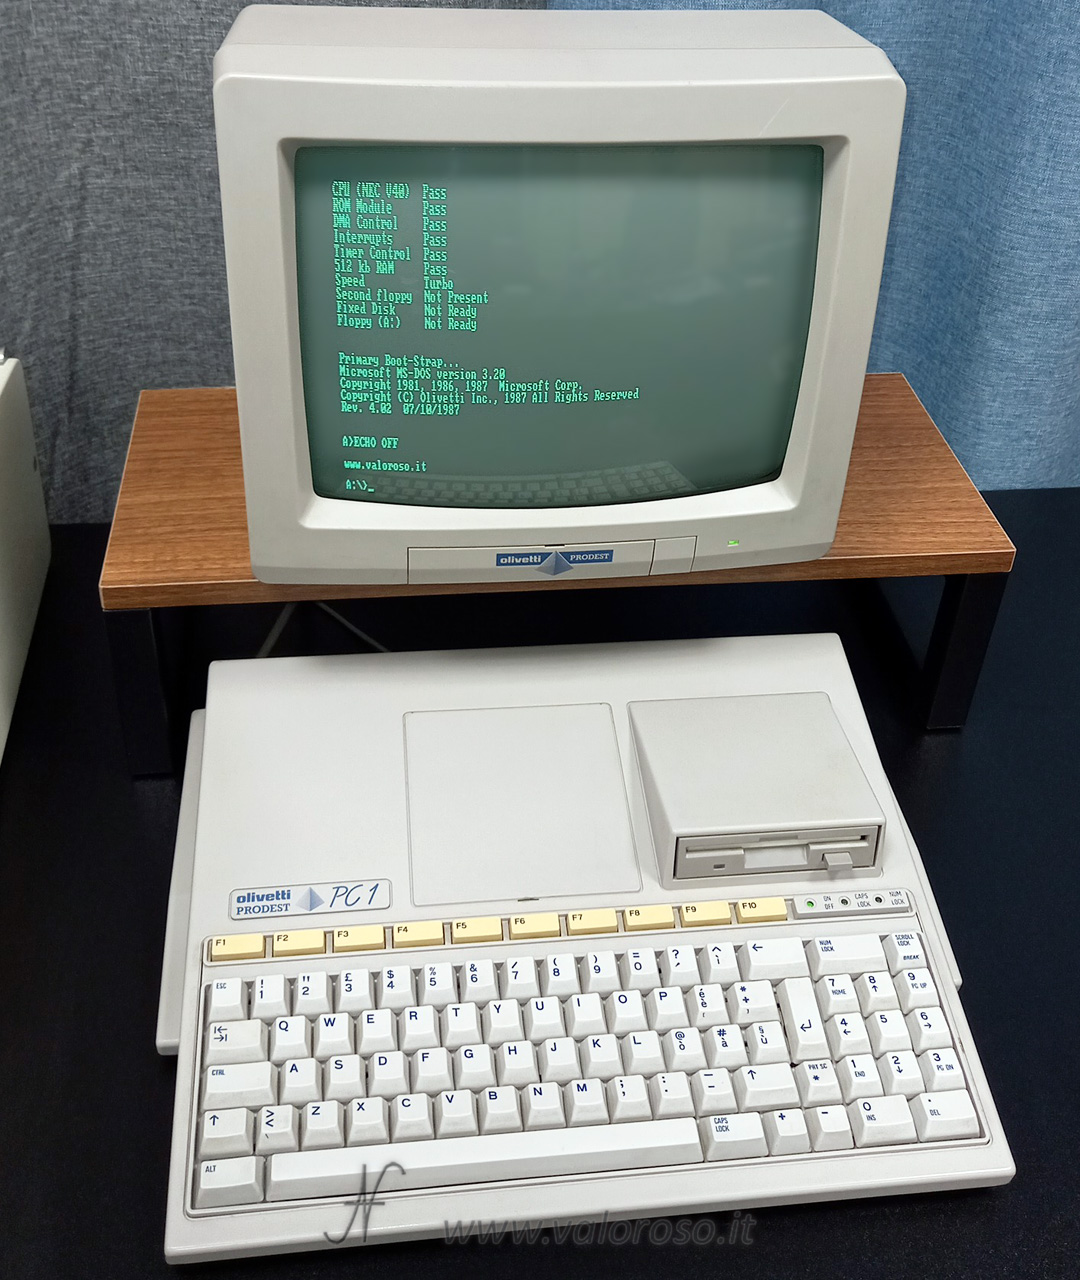 Olivetti Prodest PC1, schermata di avvio, boot screen, MSDOS, Microsoft MS-DOS versione 3.20, 1987